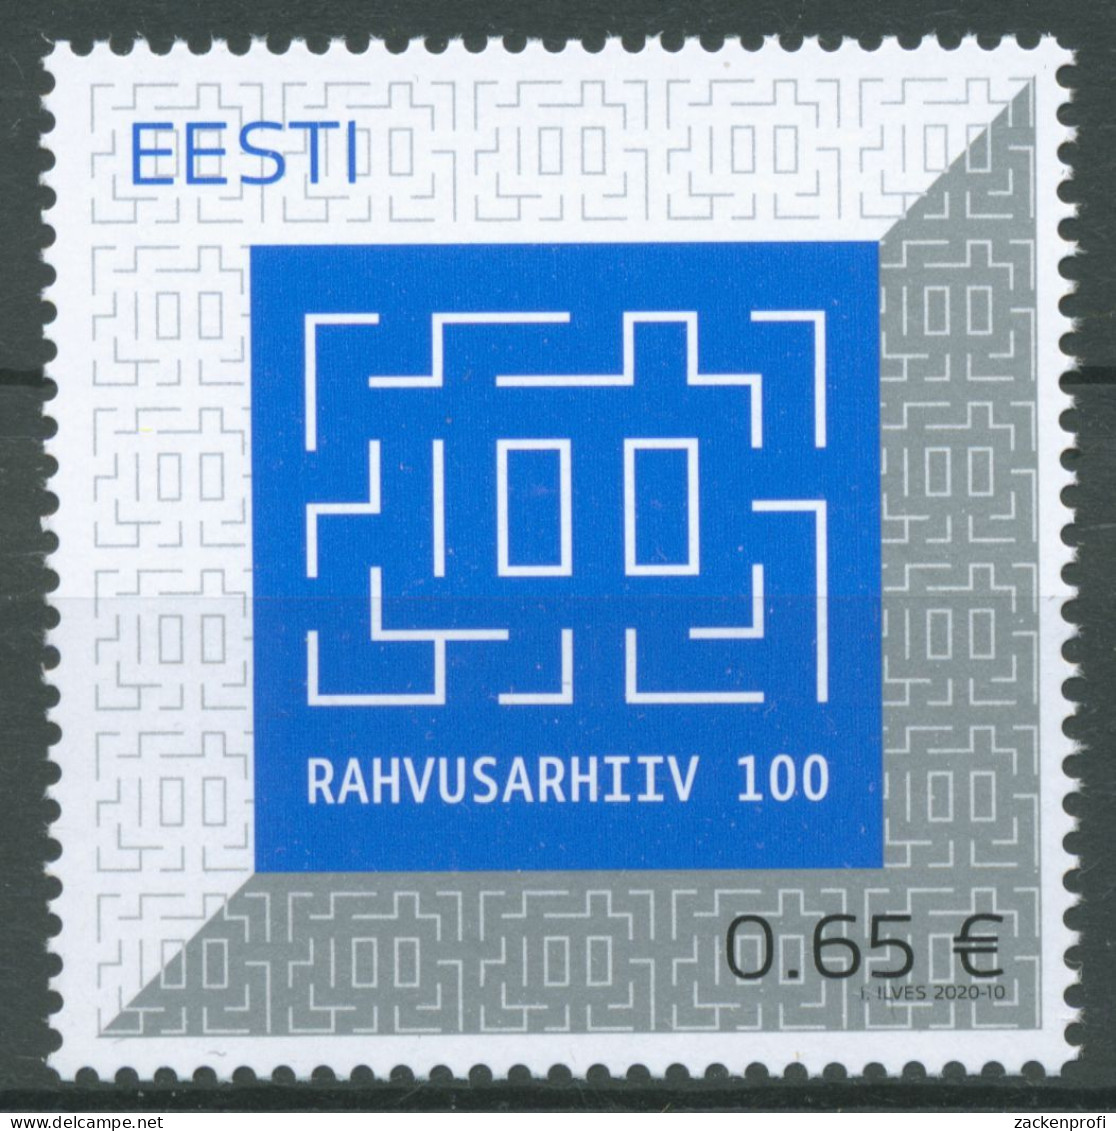 Estland 2020 100 Jahre Staatsarchiv 980 Postfrisch - Estland